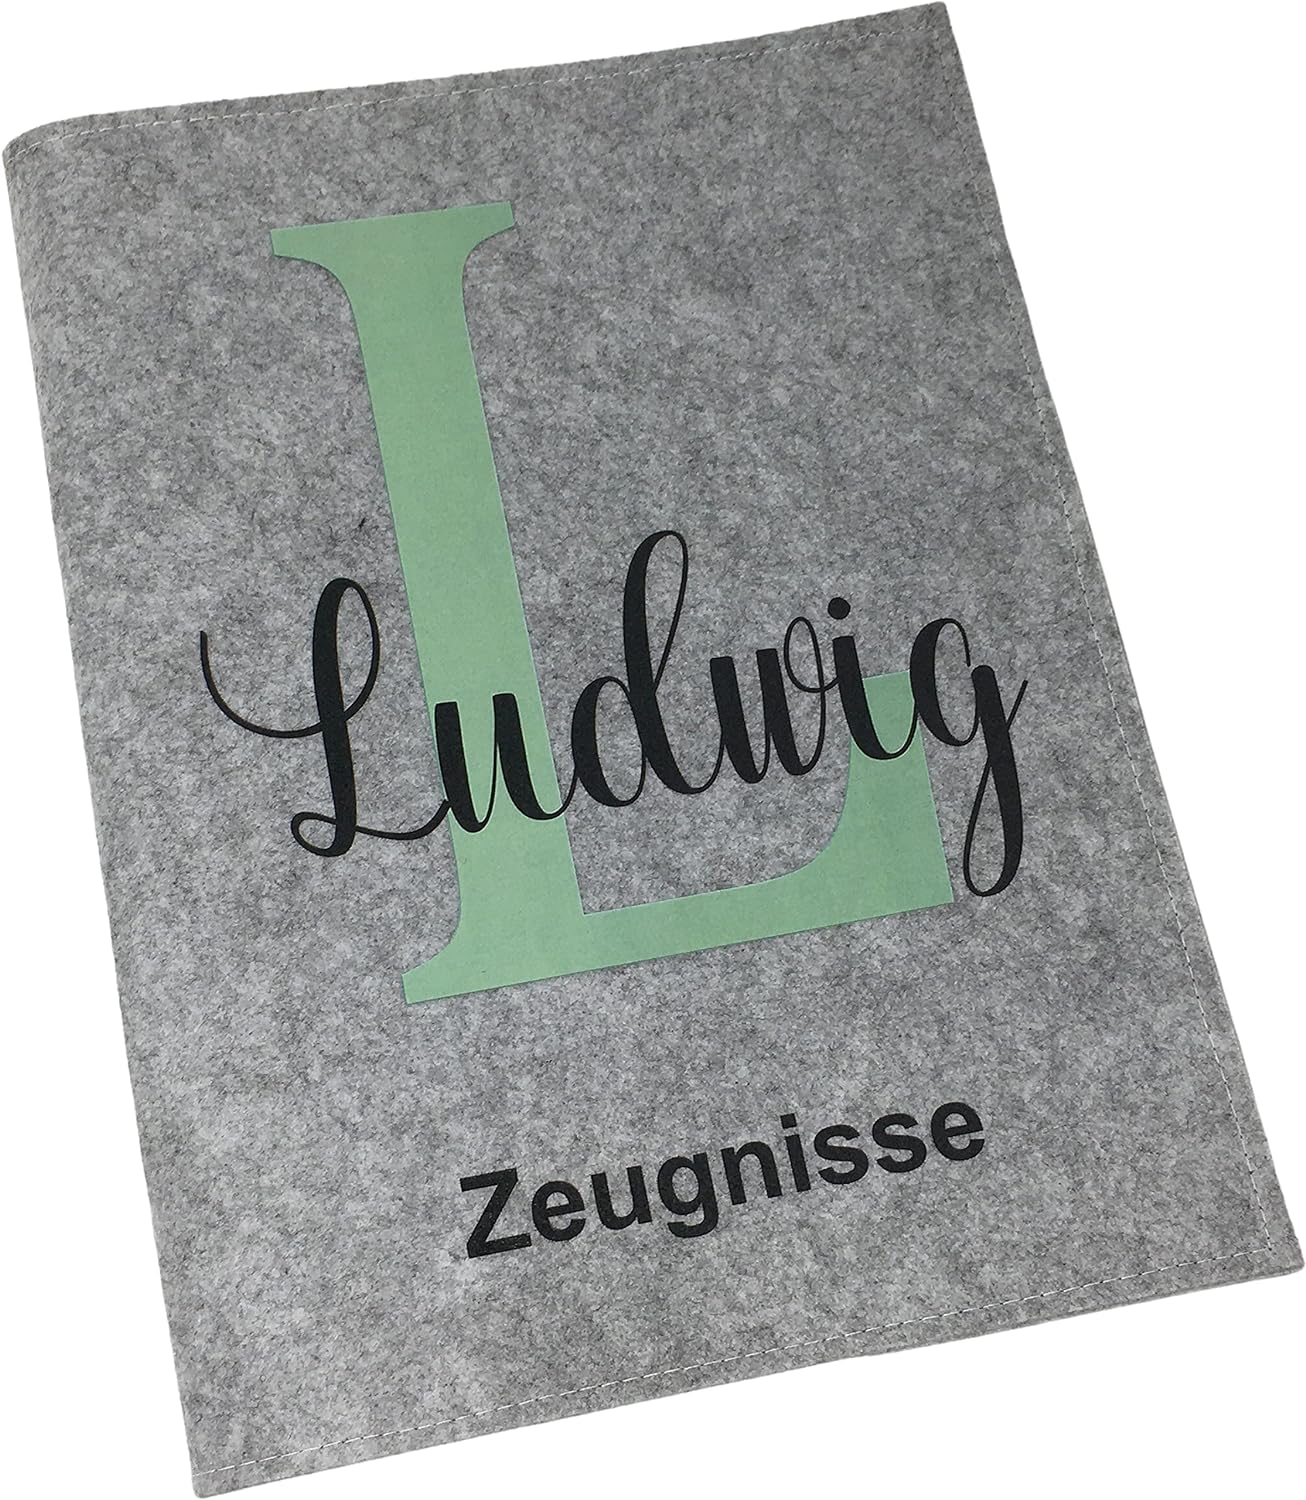 Personalisiertes Namensbuch - Zugunisse. Zeugnismappe mit individuellem Namen und Design für Erinnerungen an schulische Erfolge.